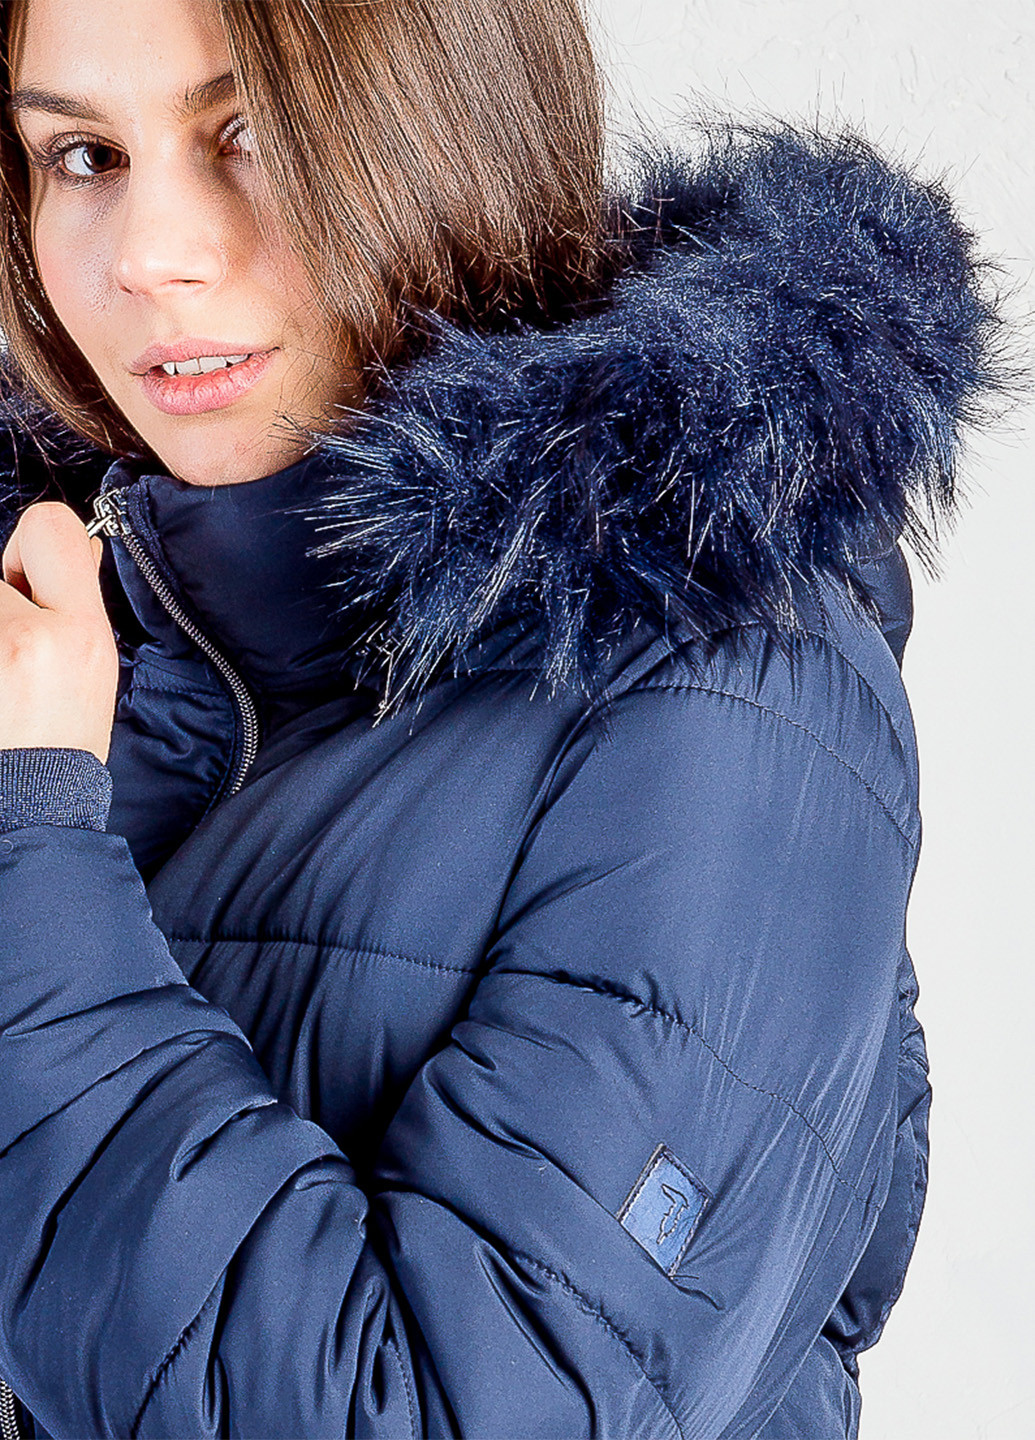 Синя зимня куртка Trussardi